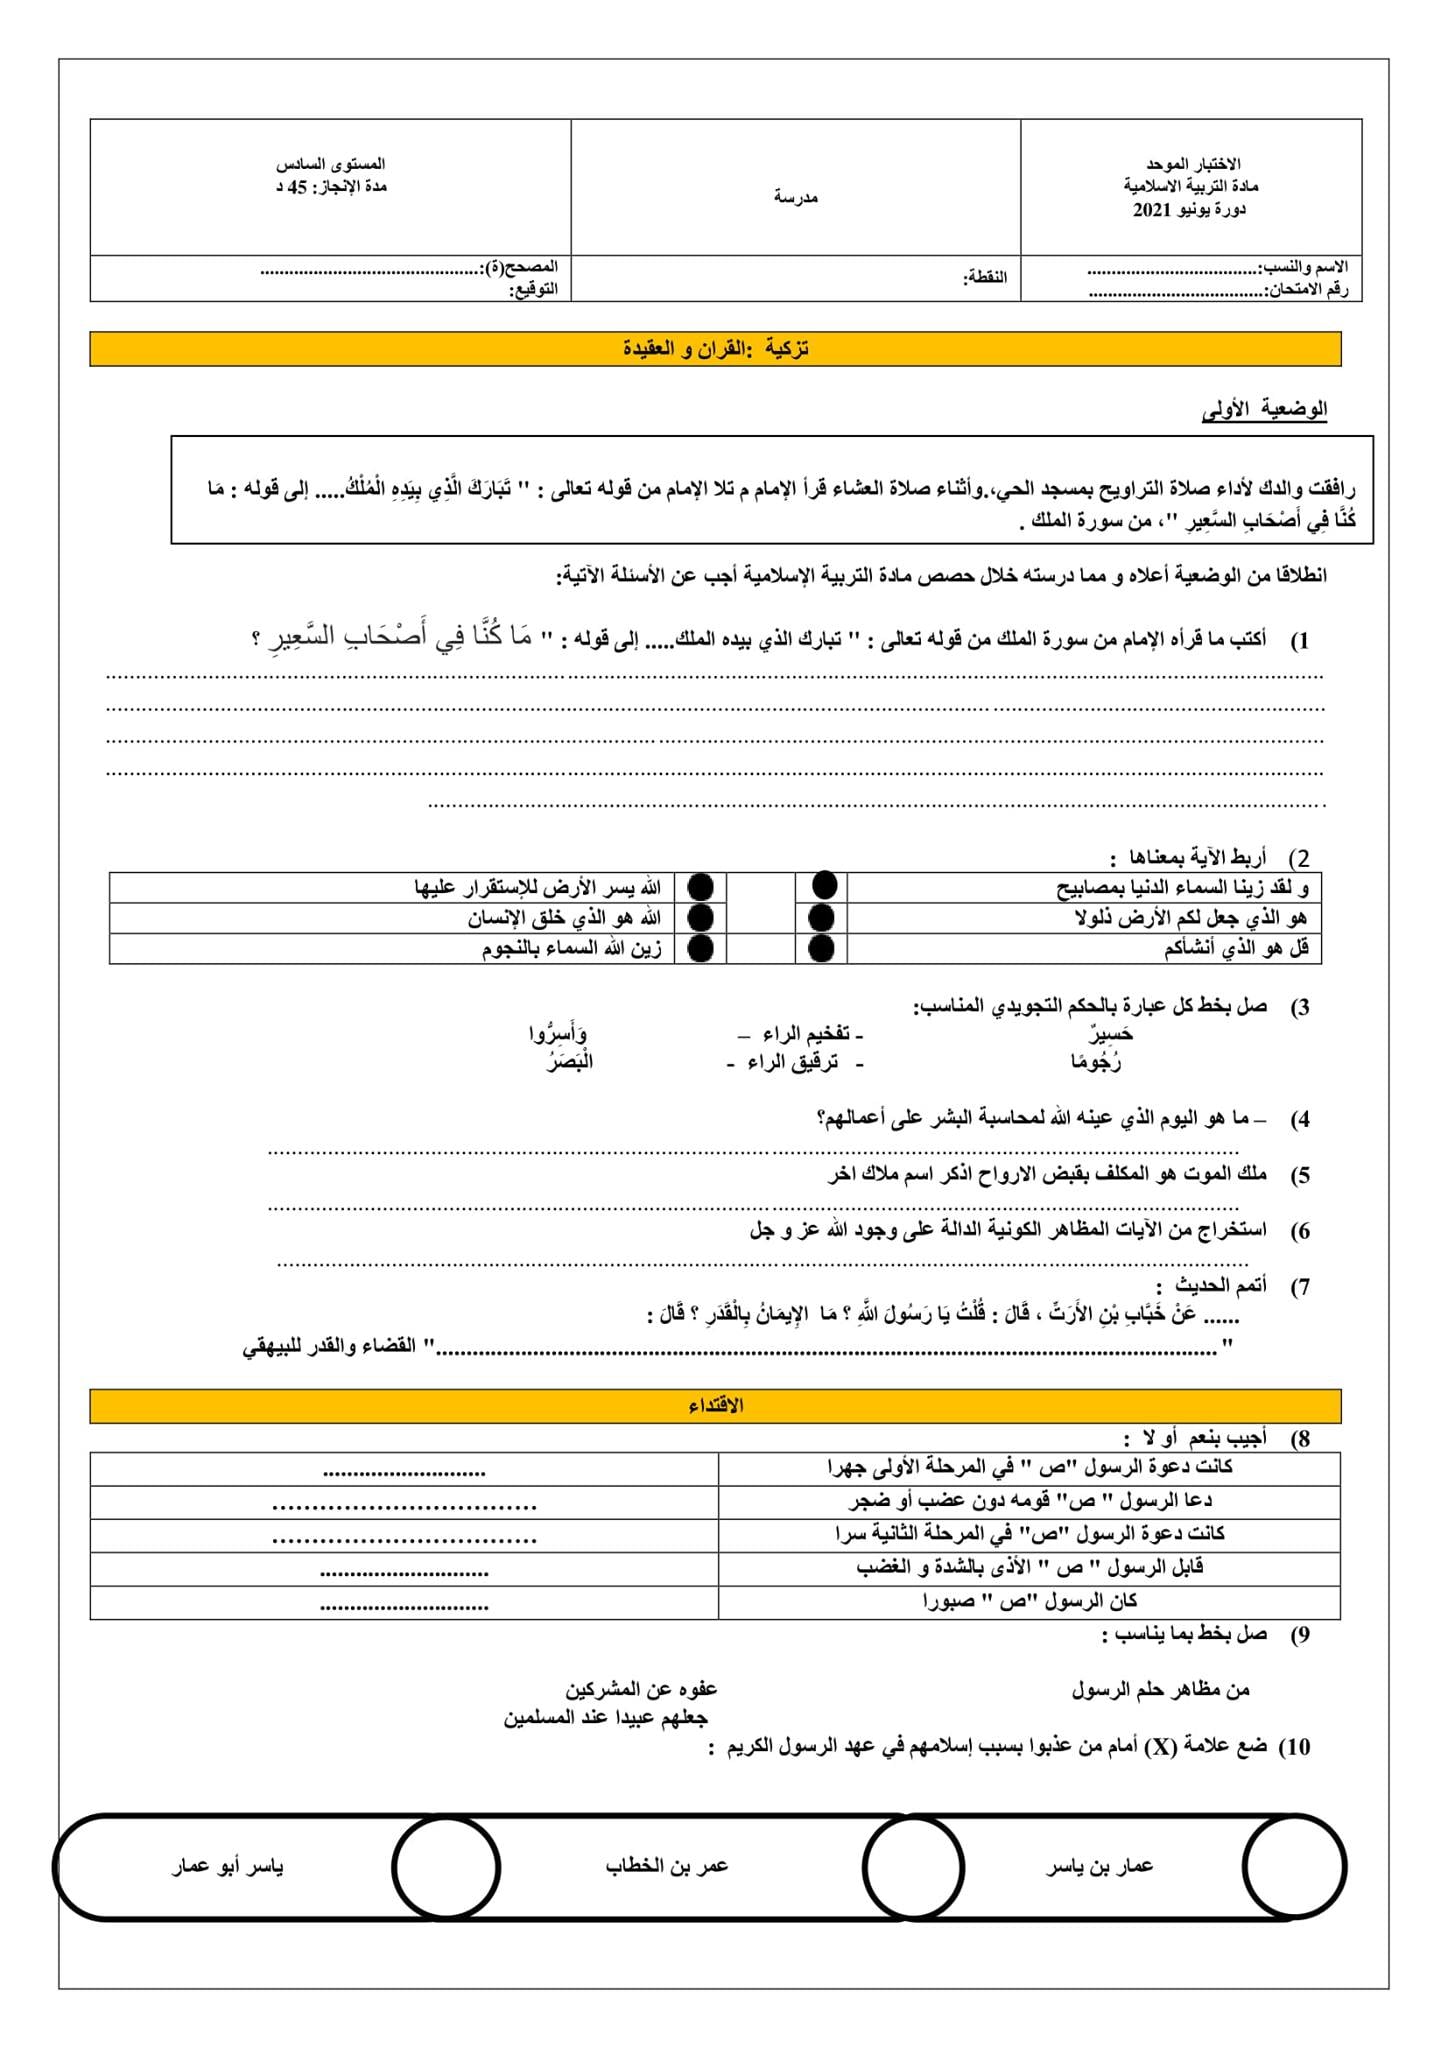 نموذج الامتحان الاقليمي في التربية الاسلامية الموحد  للمستوى السادس  وفق الاطر المرجعية المحينة 2021